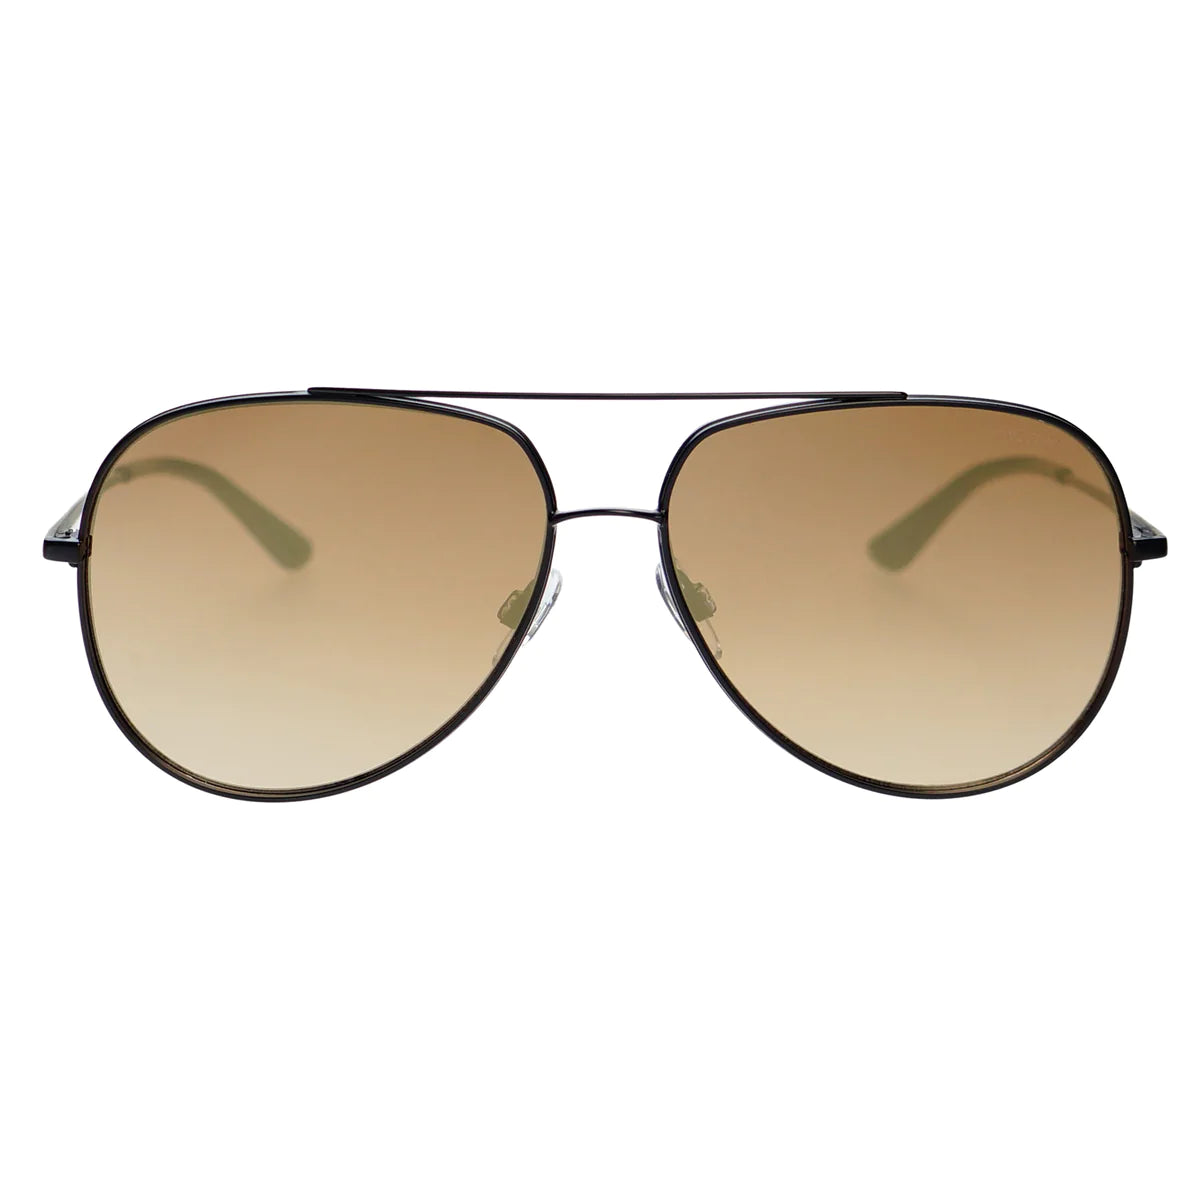 Sunglasses- Max Black/Gold Mirror (68-4)